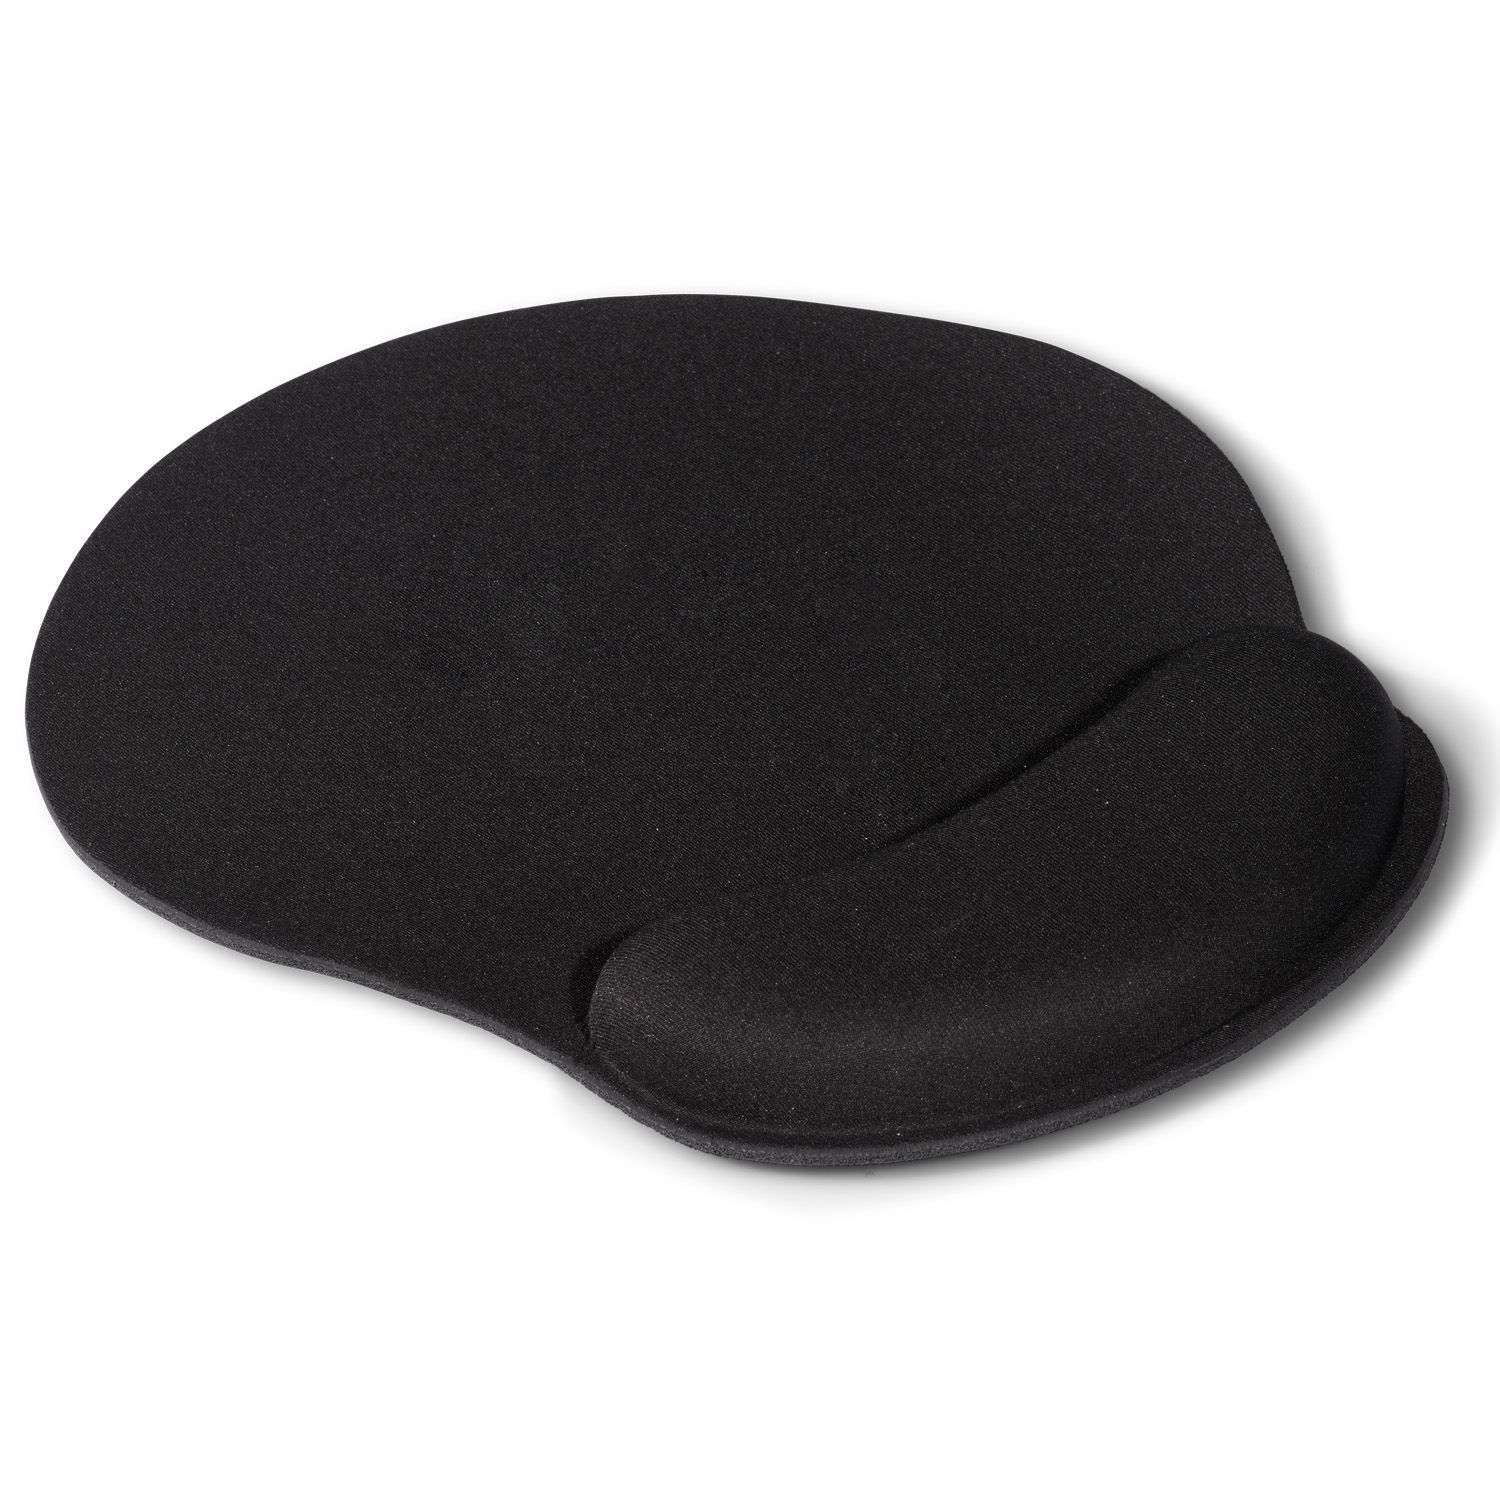 ergonomic mouse pad black